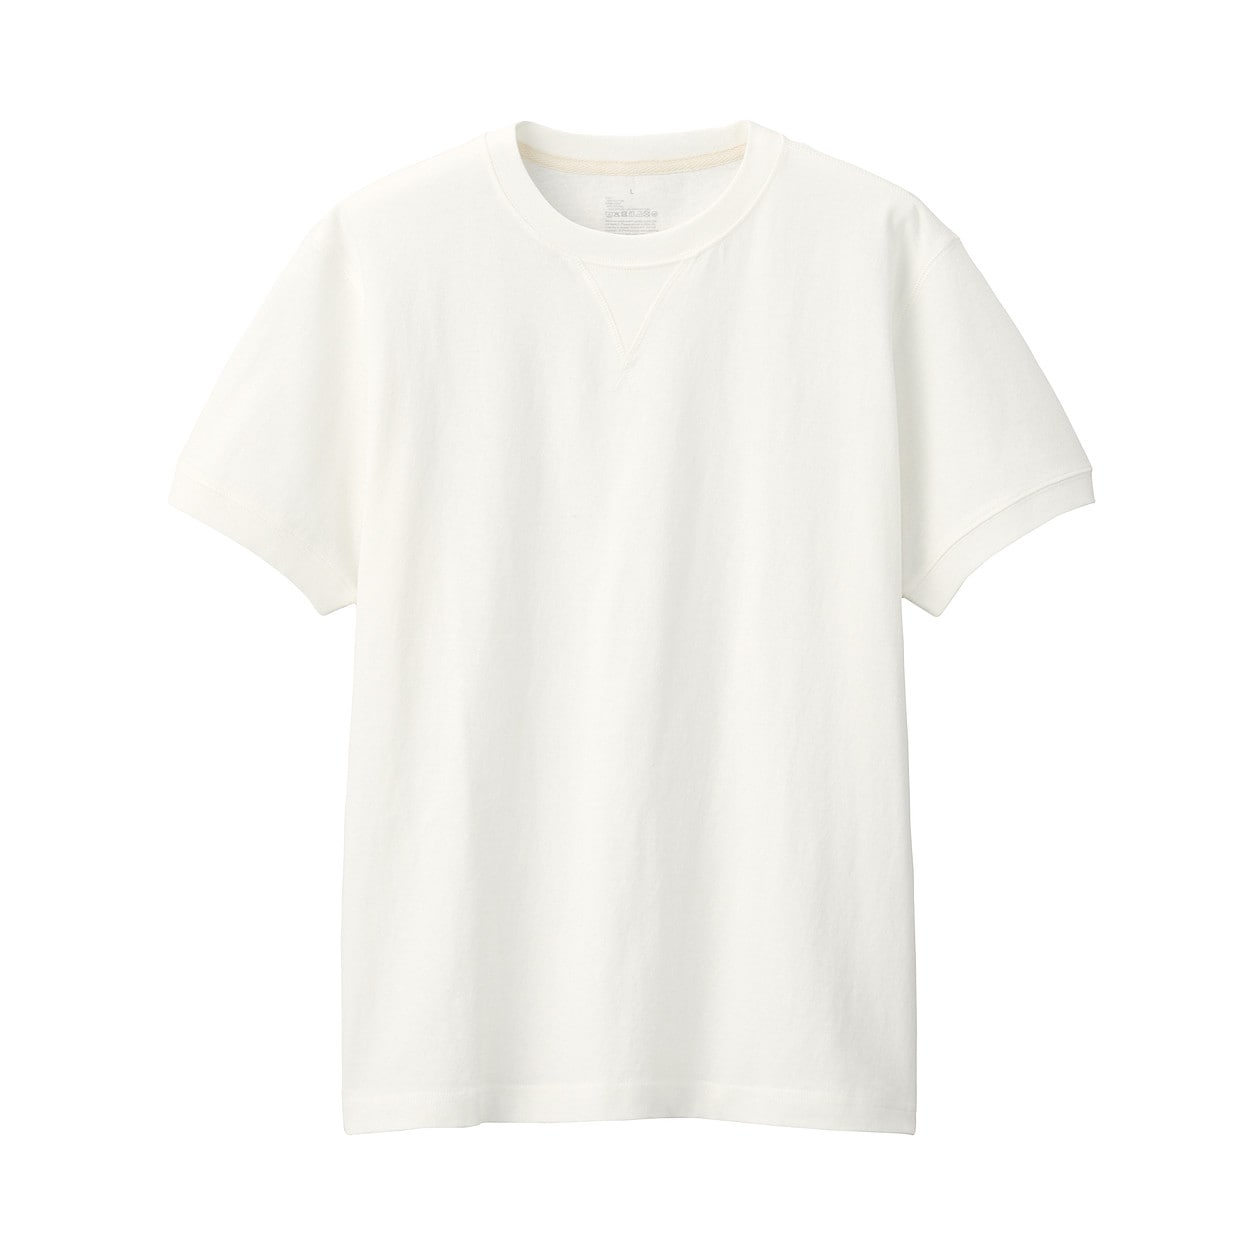 乳首が透けない 夏におすすめのメンズ白tシャツ6選 Aretto アレット